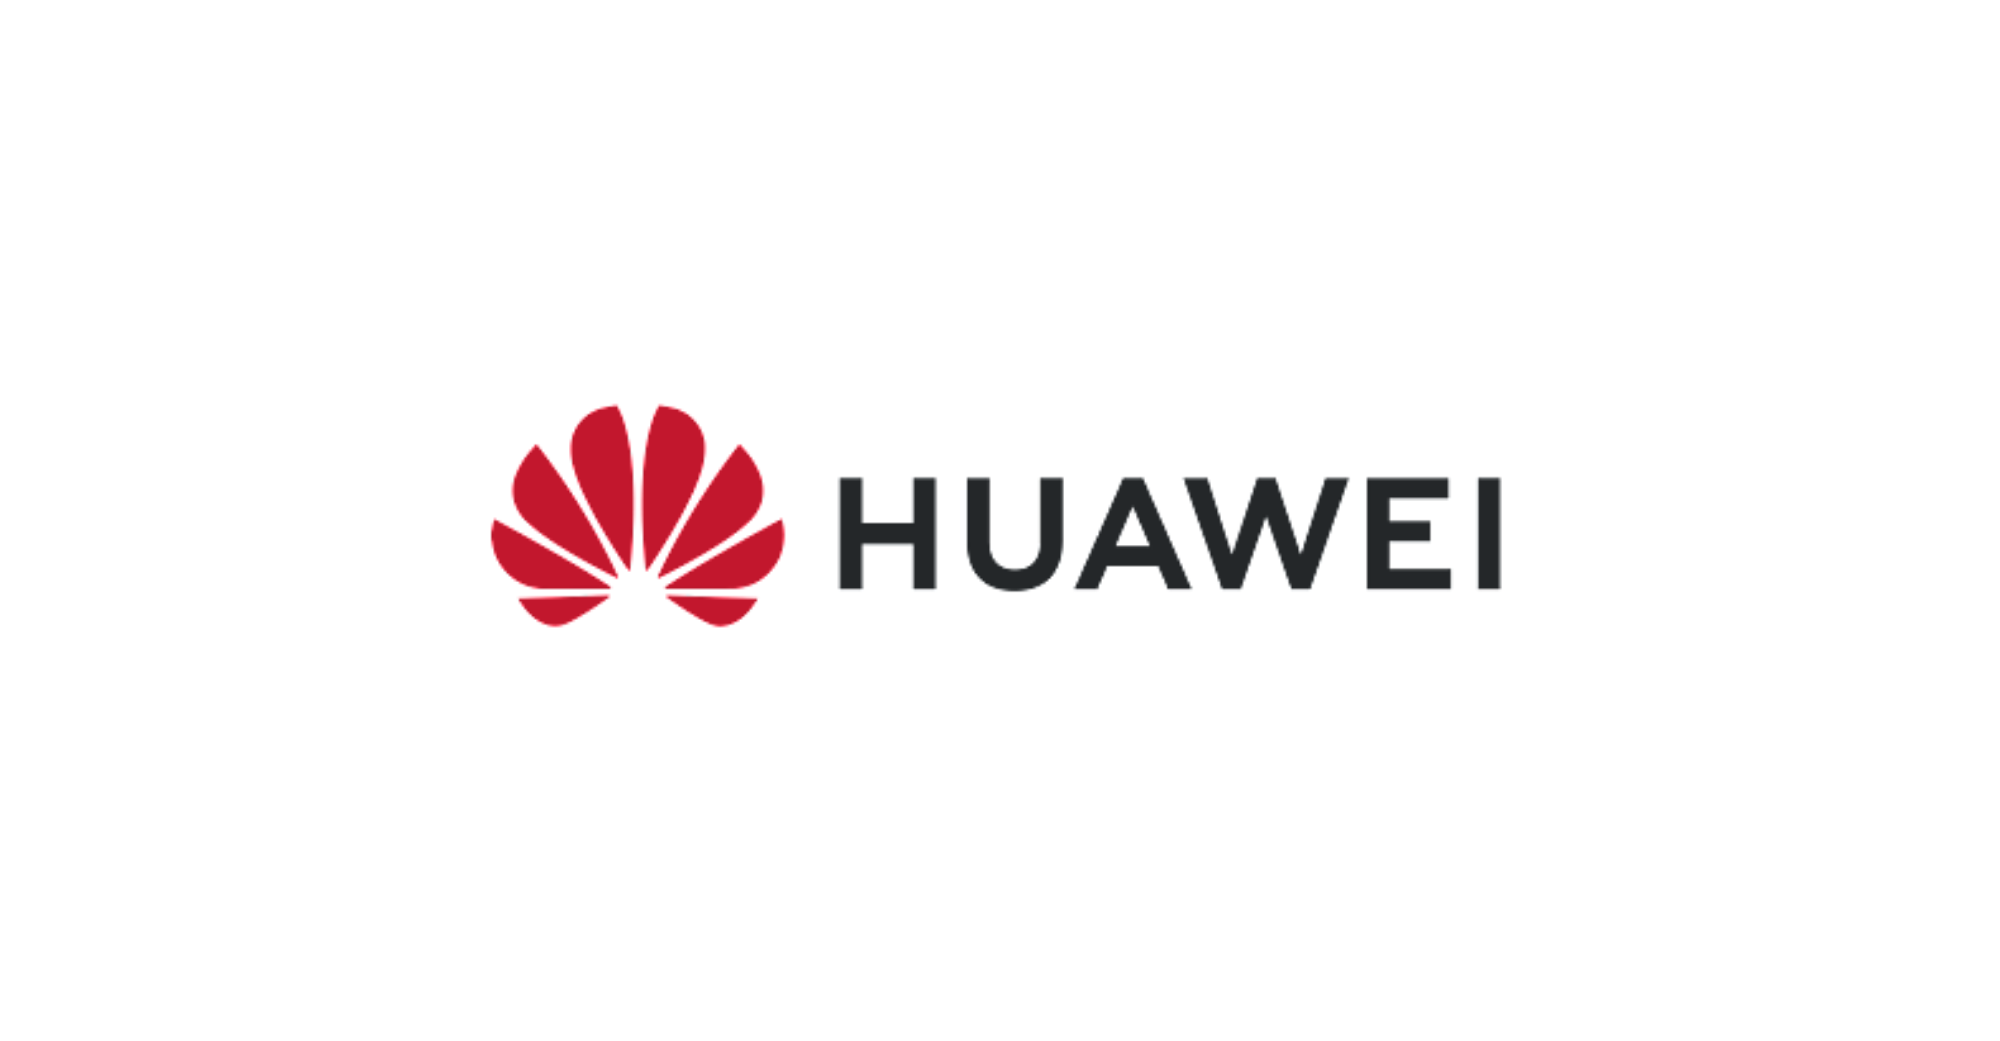 Huawei သည် semiconductor device ထုတ်လုပ်မှု၊ photoresist နှင့်တတိယ မျိုးဆက် semiconductor ပစ္စည်း များတွင်